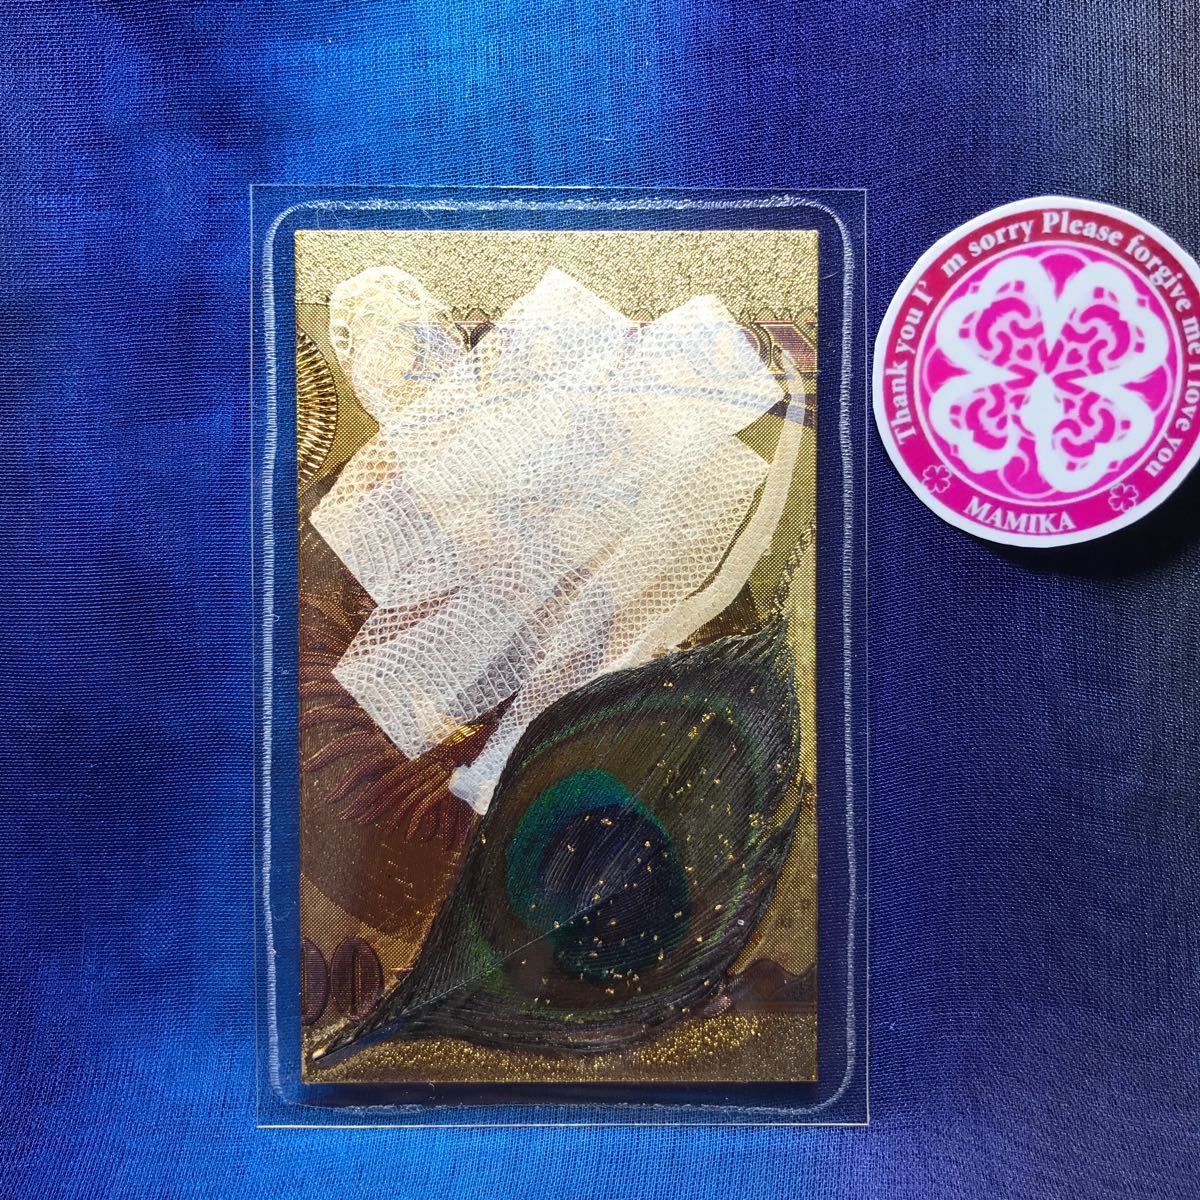  редкость obi Исэ город бог . криптомерия порез ... один шт белый .mamsi амулет 1000 десять тысяч иен. obi оригинальный золотой феникс ... перо один сто миллионов иен . кошелек obi Power Stone карта ..